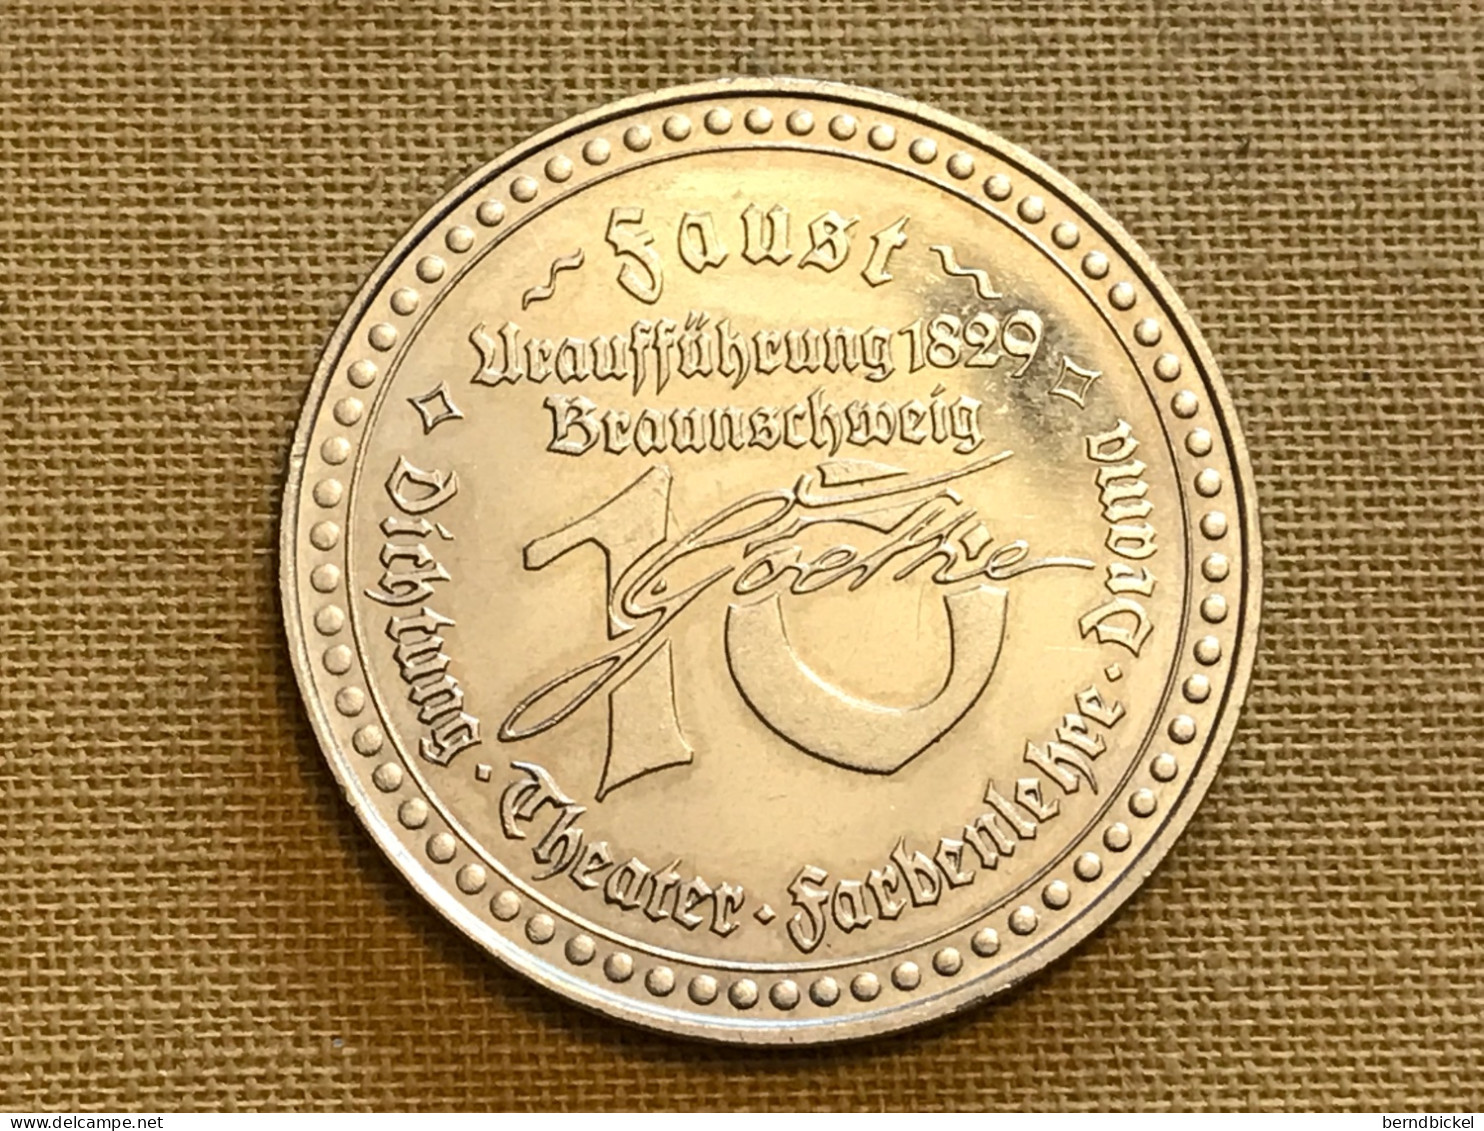 Münze Medaille Deutschland Faust Uraufführung 1829 Braunschweig - Souvenir-Medaille (elongated Coins)